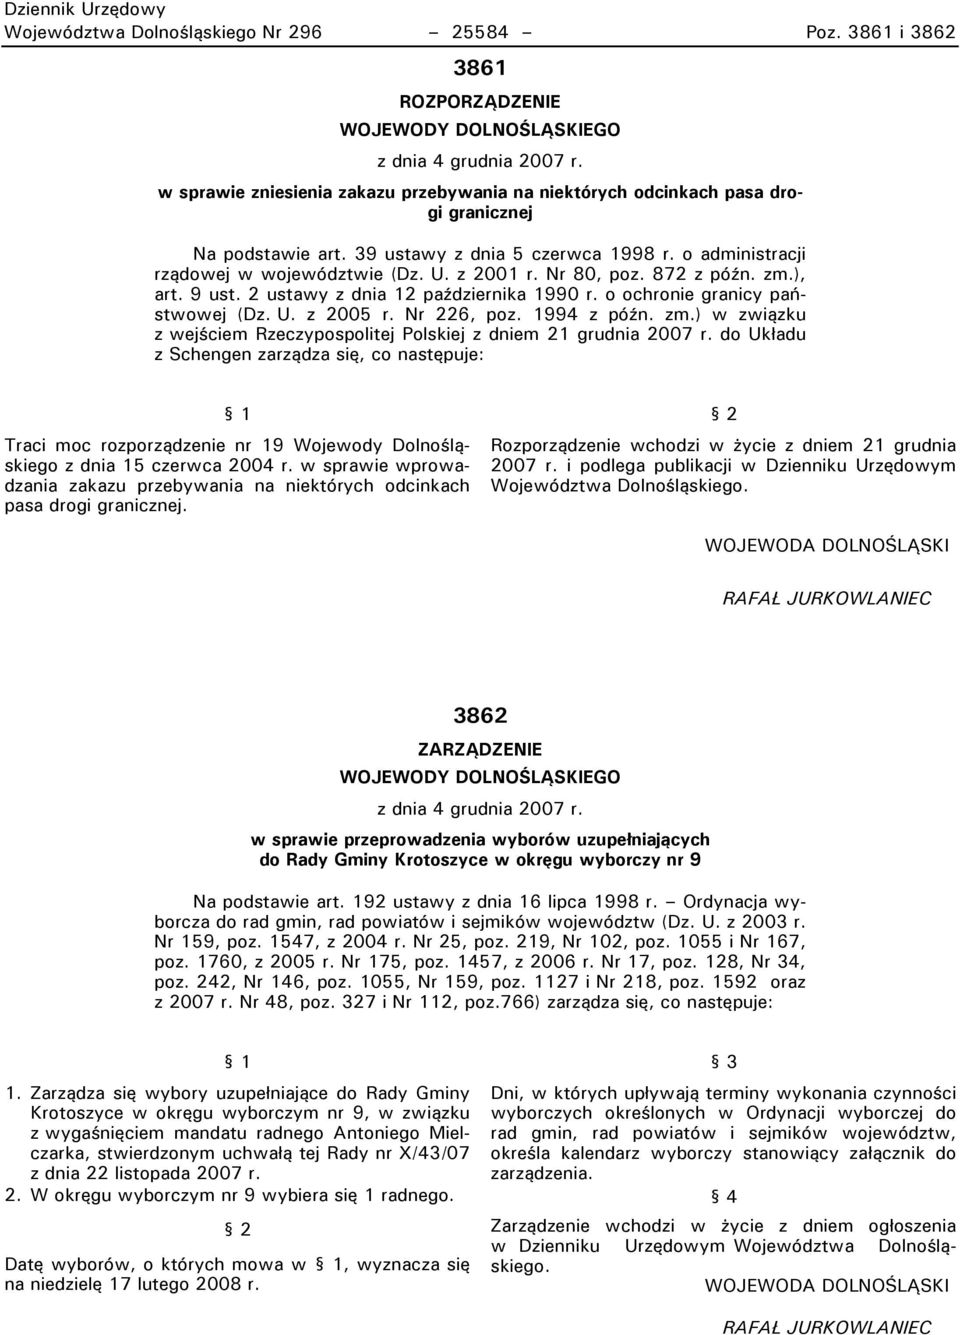 Nr 80t poz. 872 z późn. zm.)t art. 9 ust. 2 ustawy z dnia 12 października 1990 r. o ochronie granicy państwowej (Dz. U. z 2005 r. Nr 226t poz. 1994 z późn. zm.) w związku z wejściem Rzeczypospolitej Polskiej z dniem 21 grudnia 2007 r.